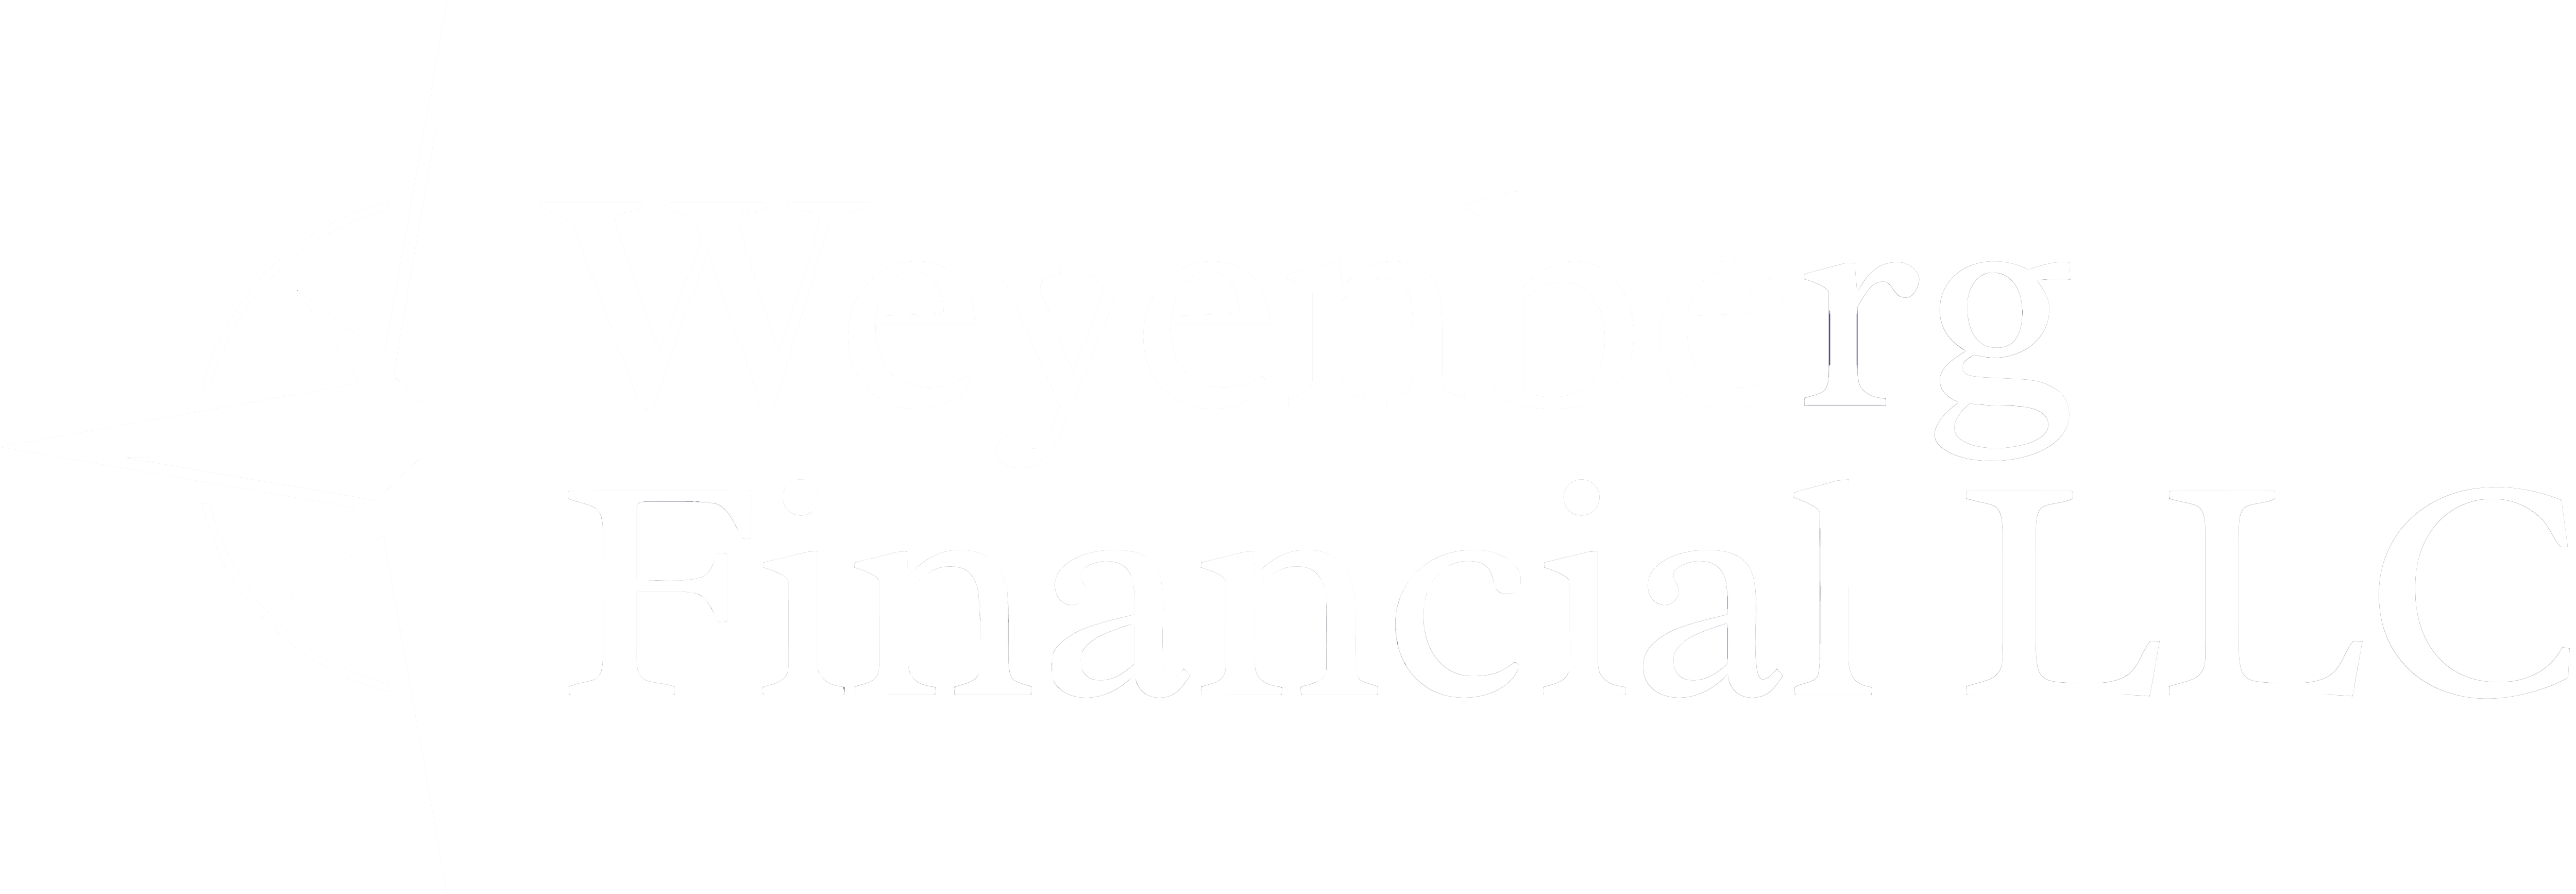 Weyenberg Financial LLC